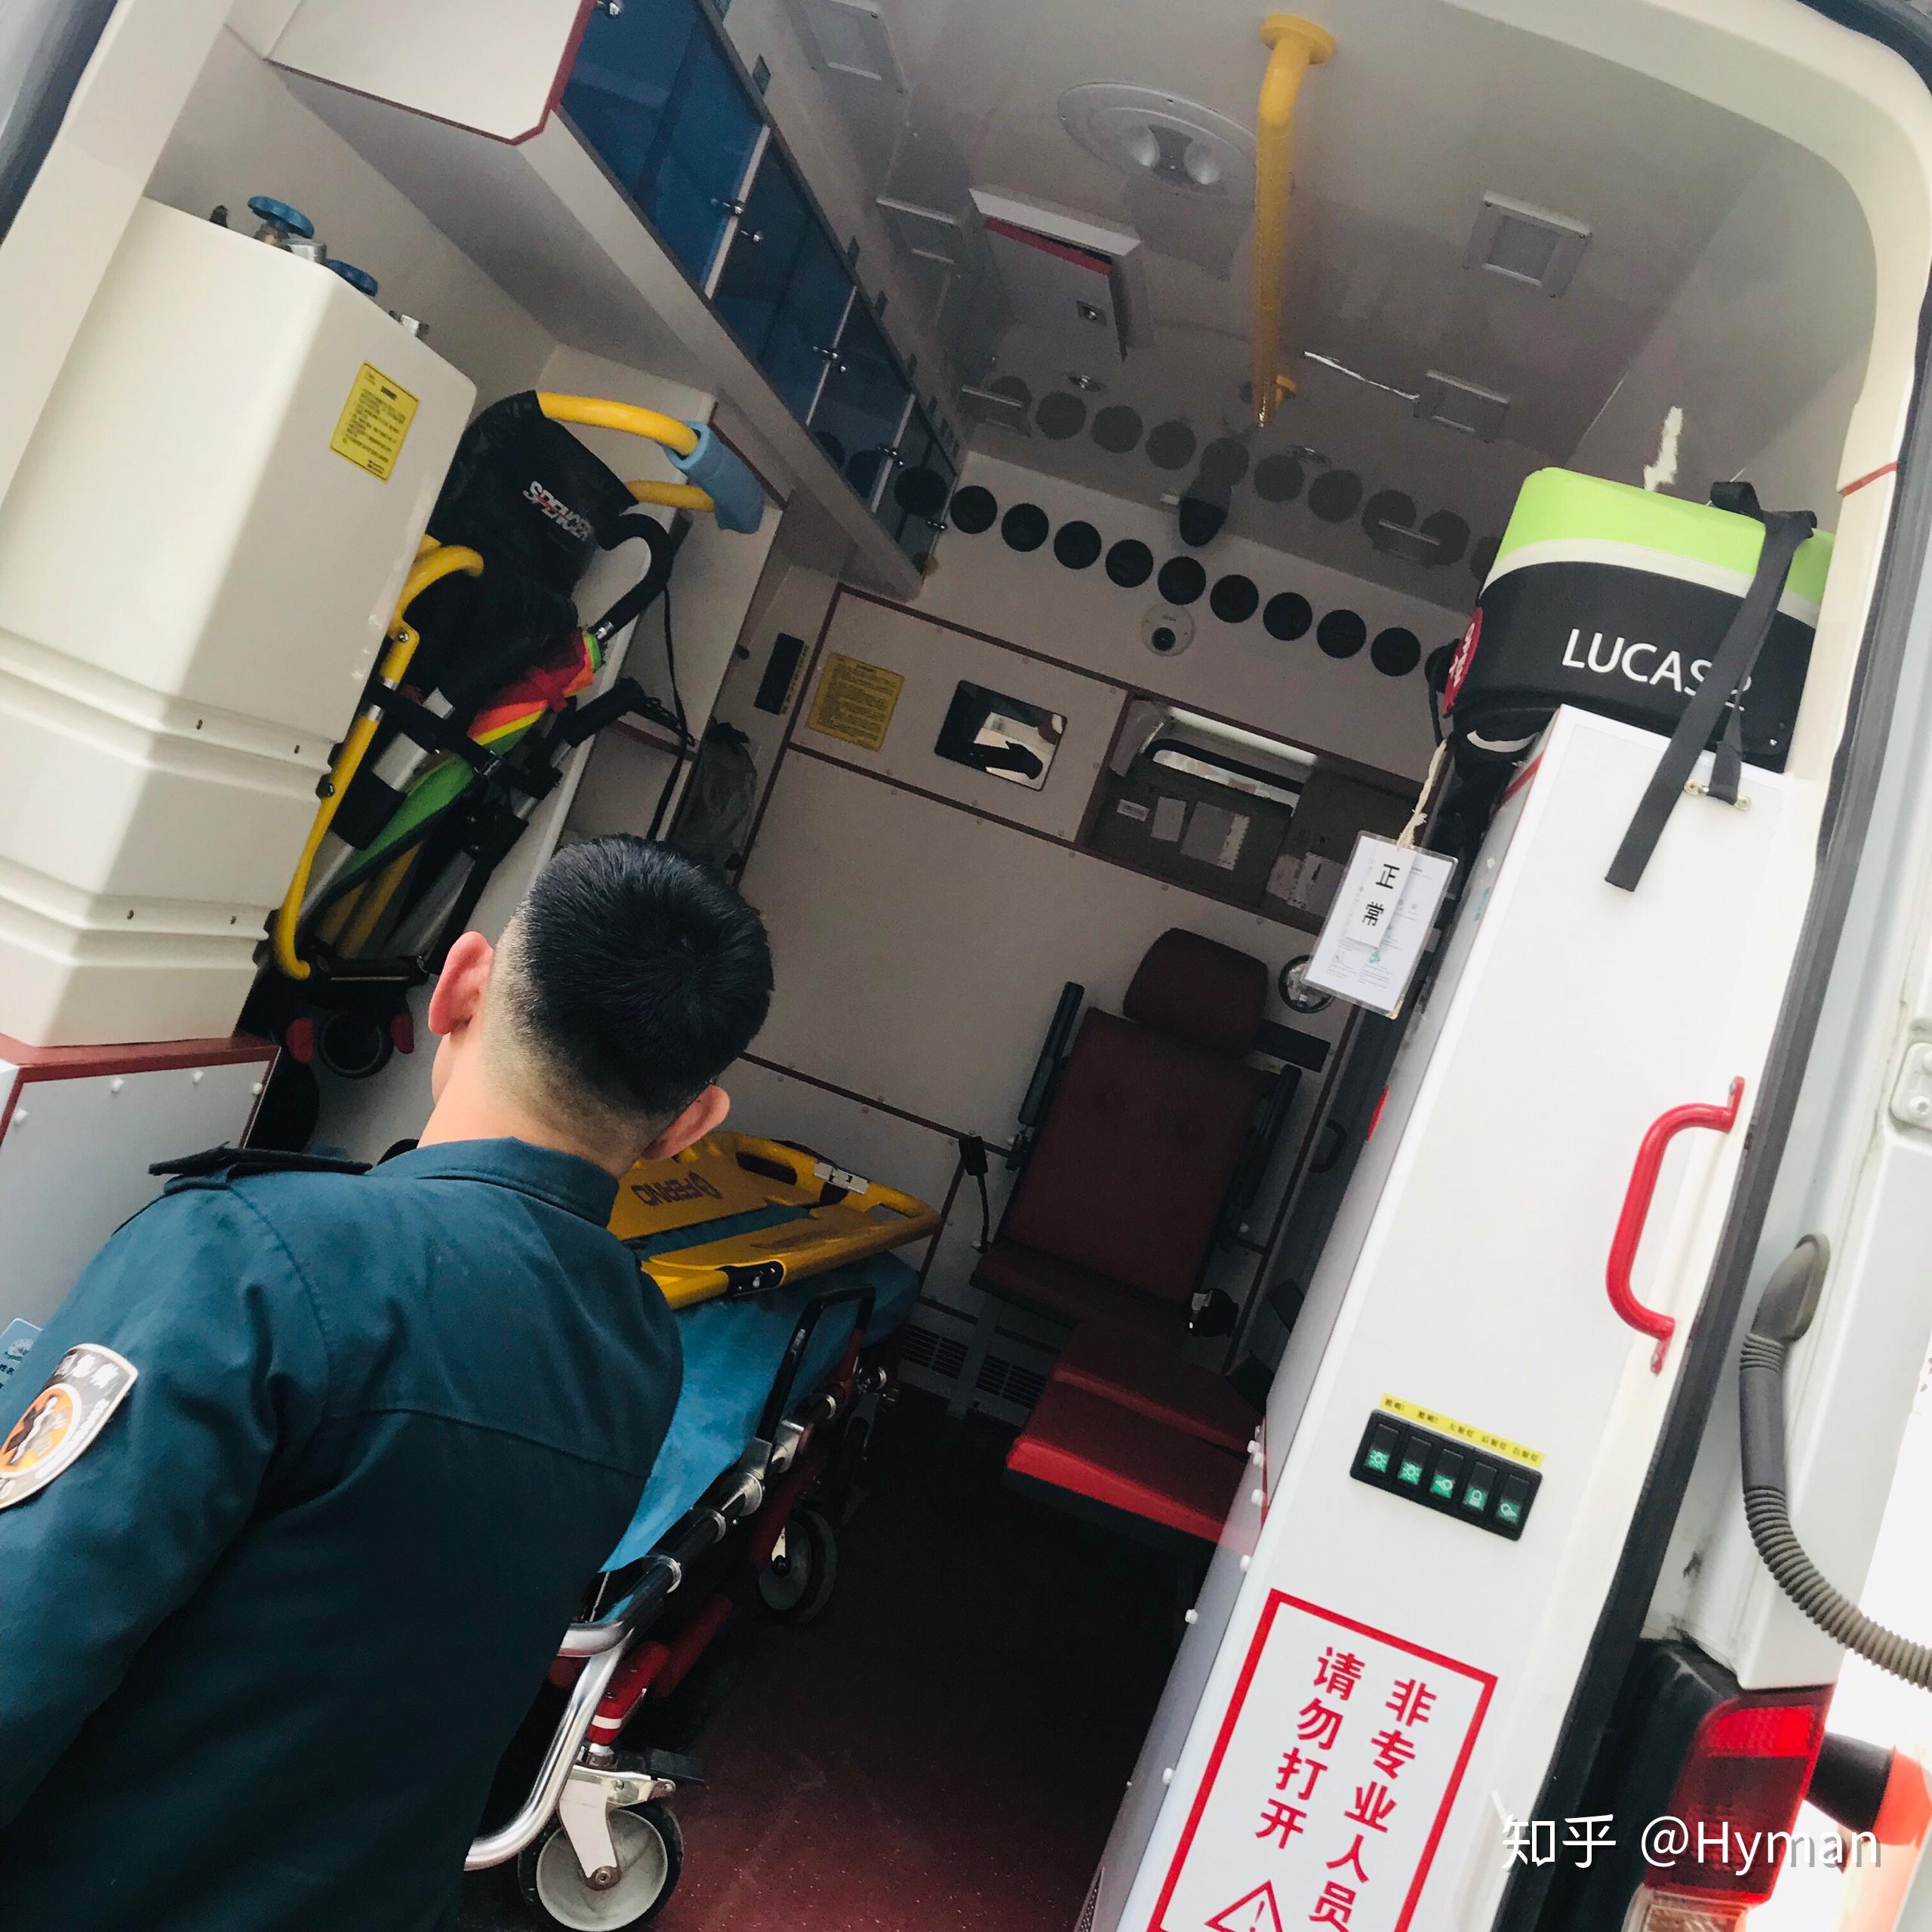 移动的重症监护室 斯堪尼亚R410大型救护车在瑞典首都投入使用 重型车网——传播卡车文化 关注卡车生活